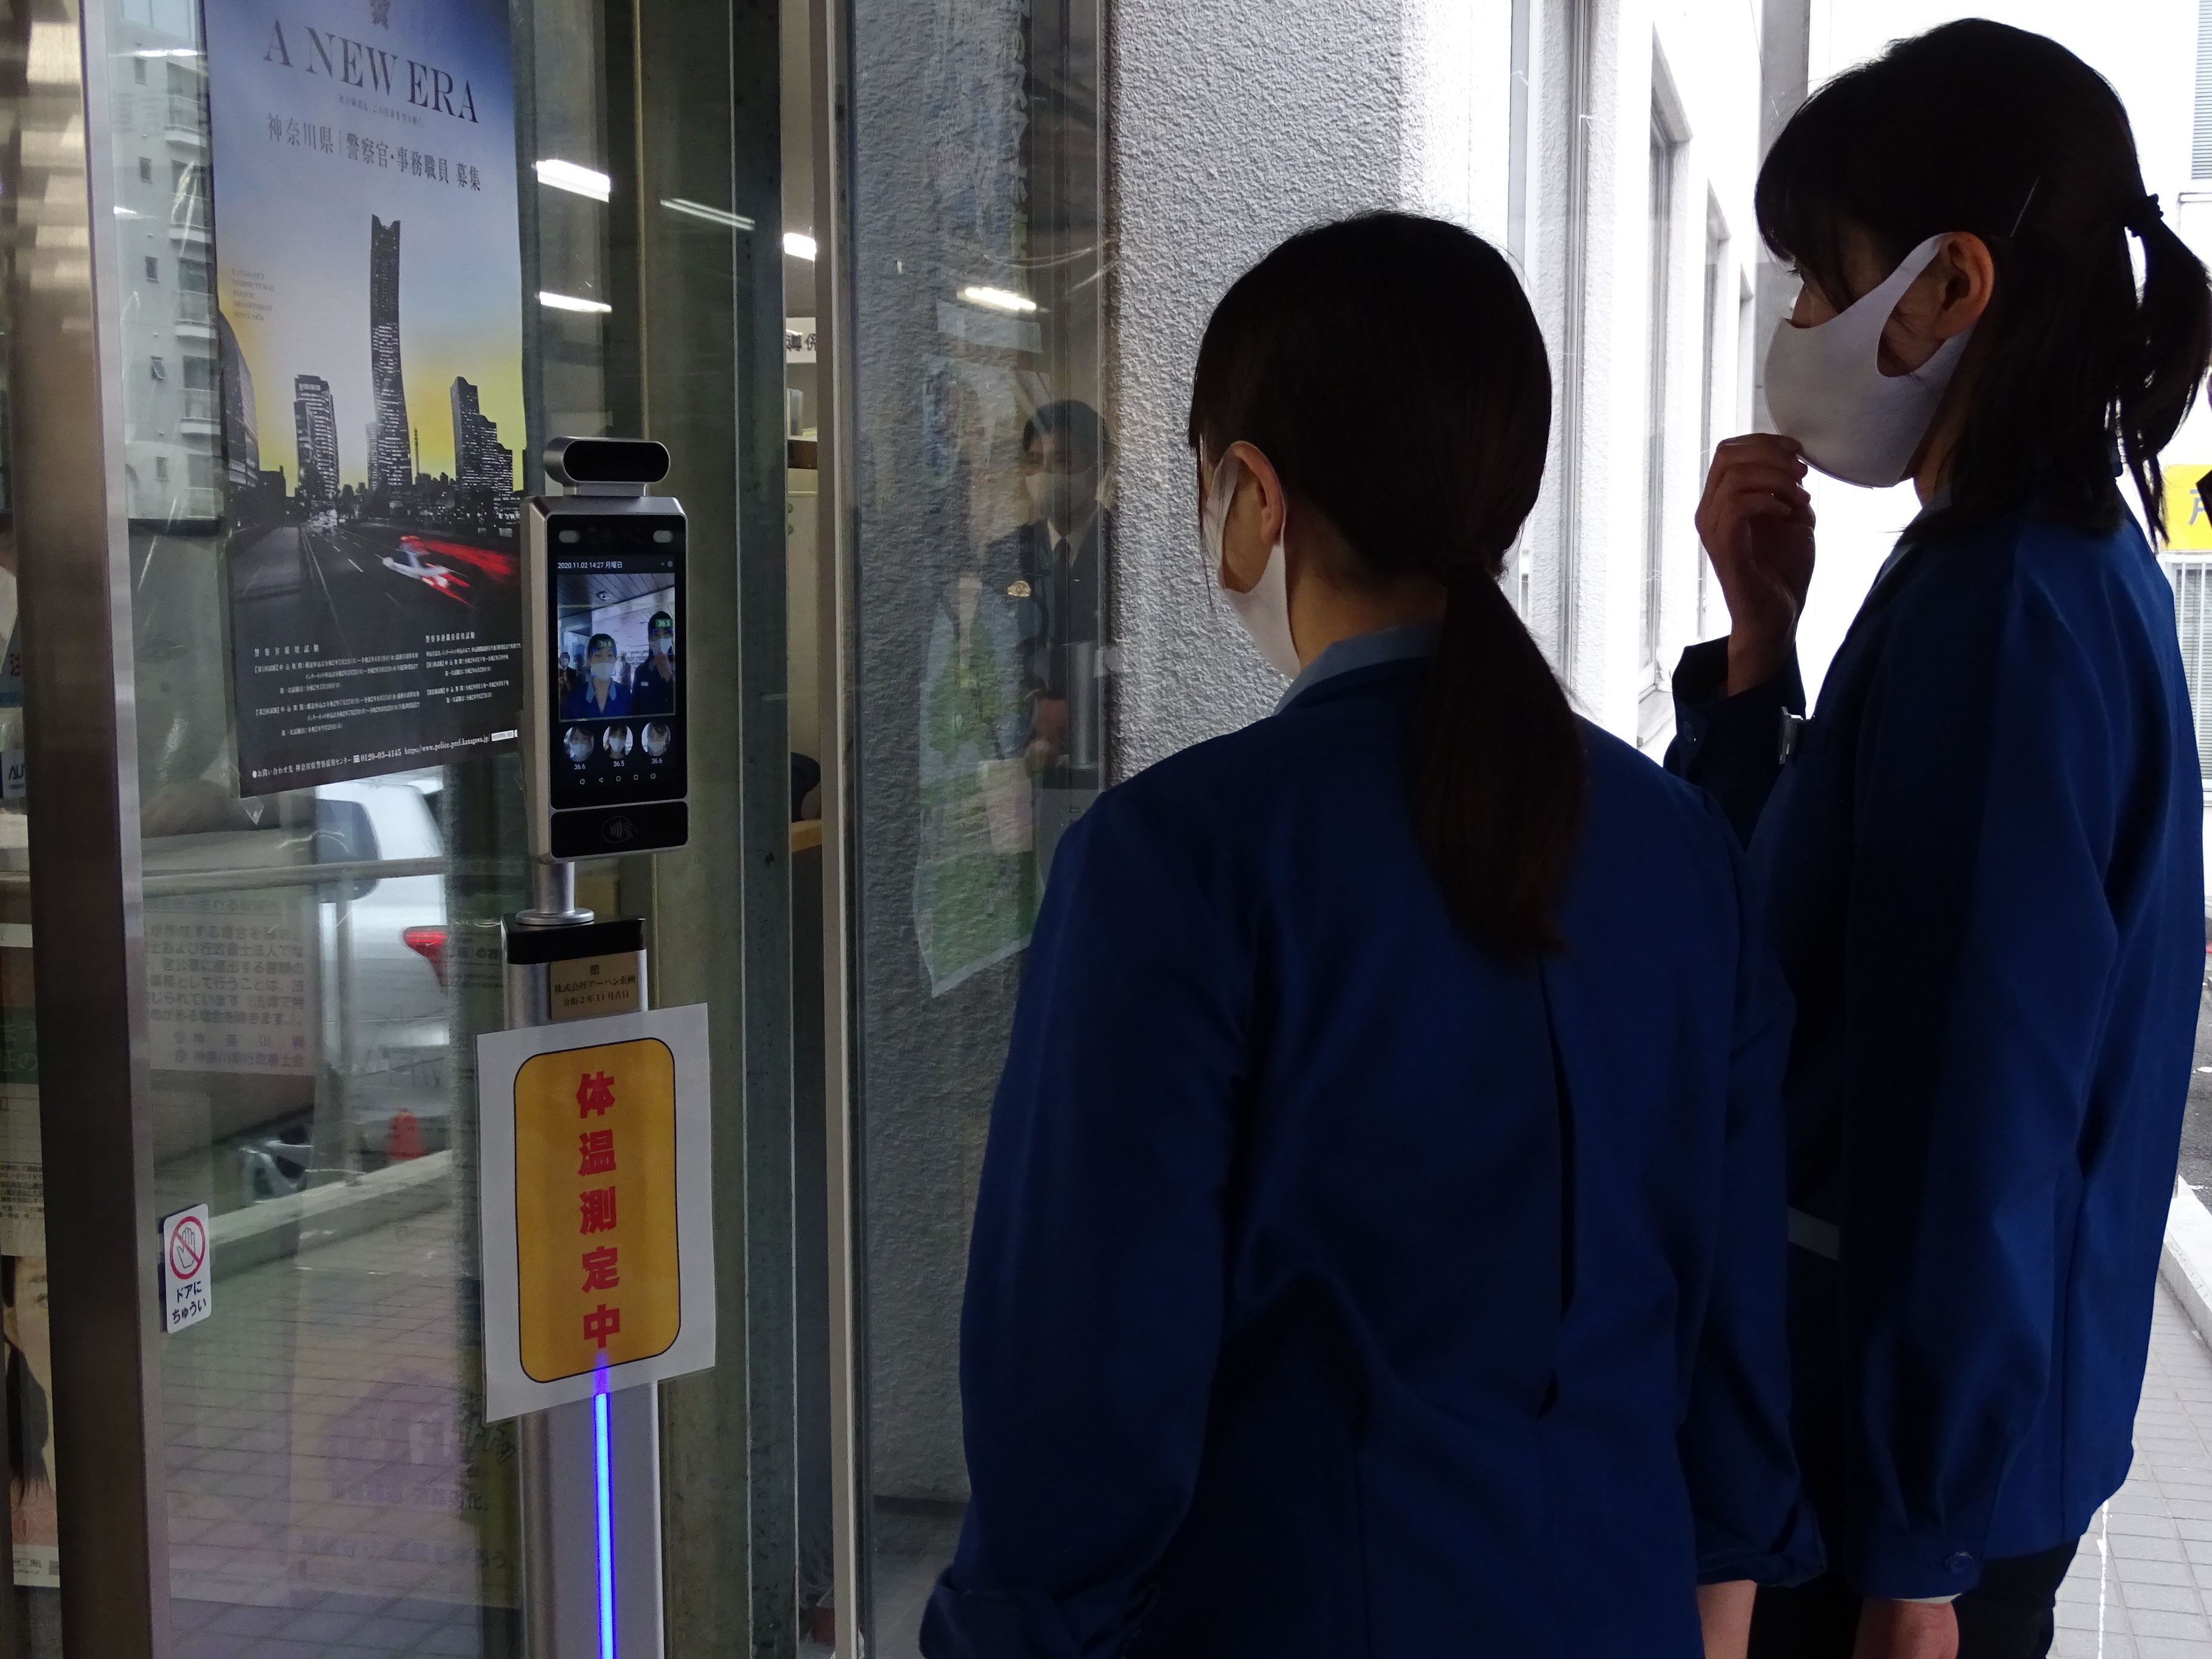 戸部警察署 横浜 に最新式の温度計測機器を寄贈 株式会社アーバン企画のプレスリリース